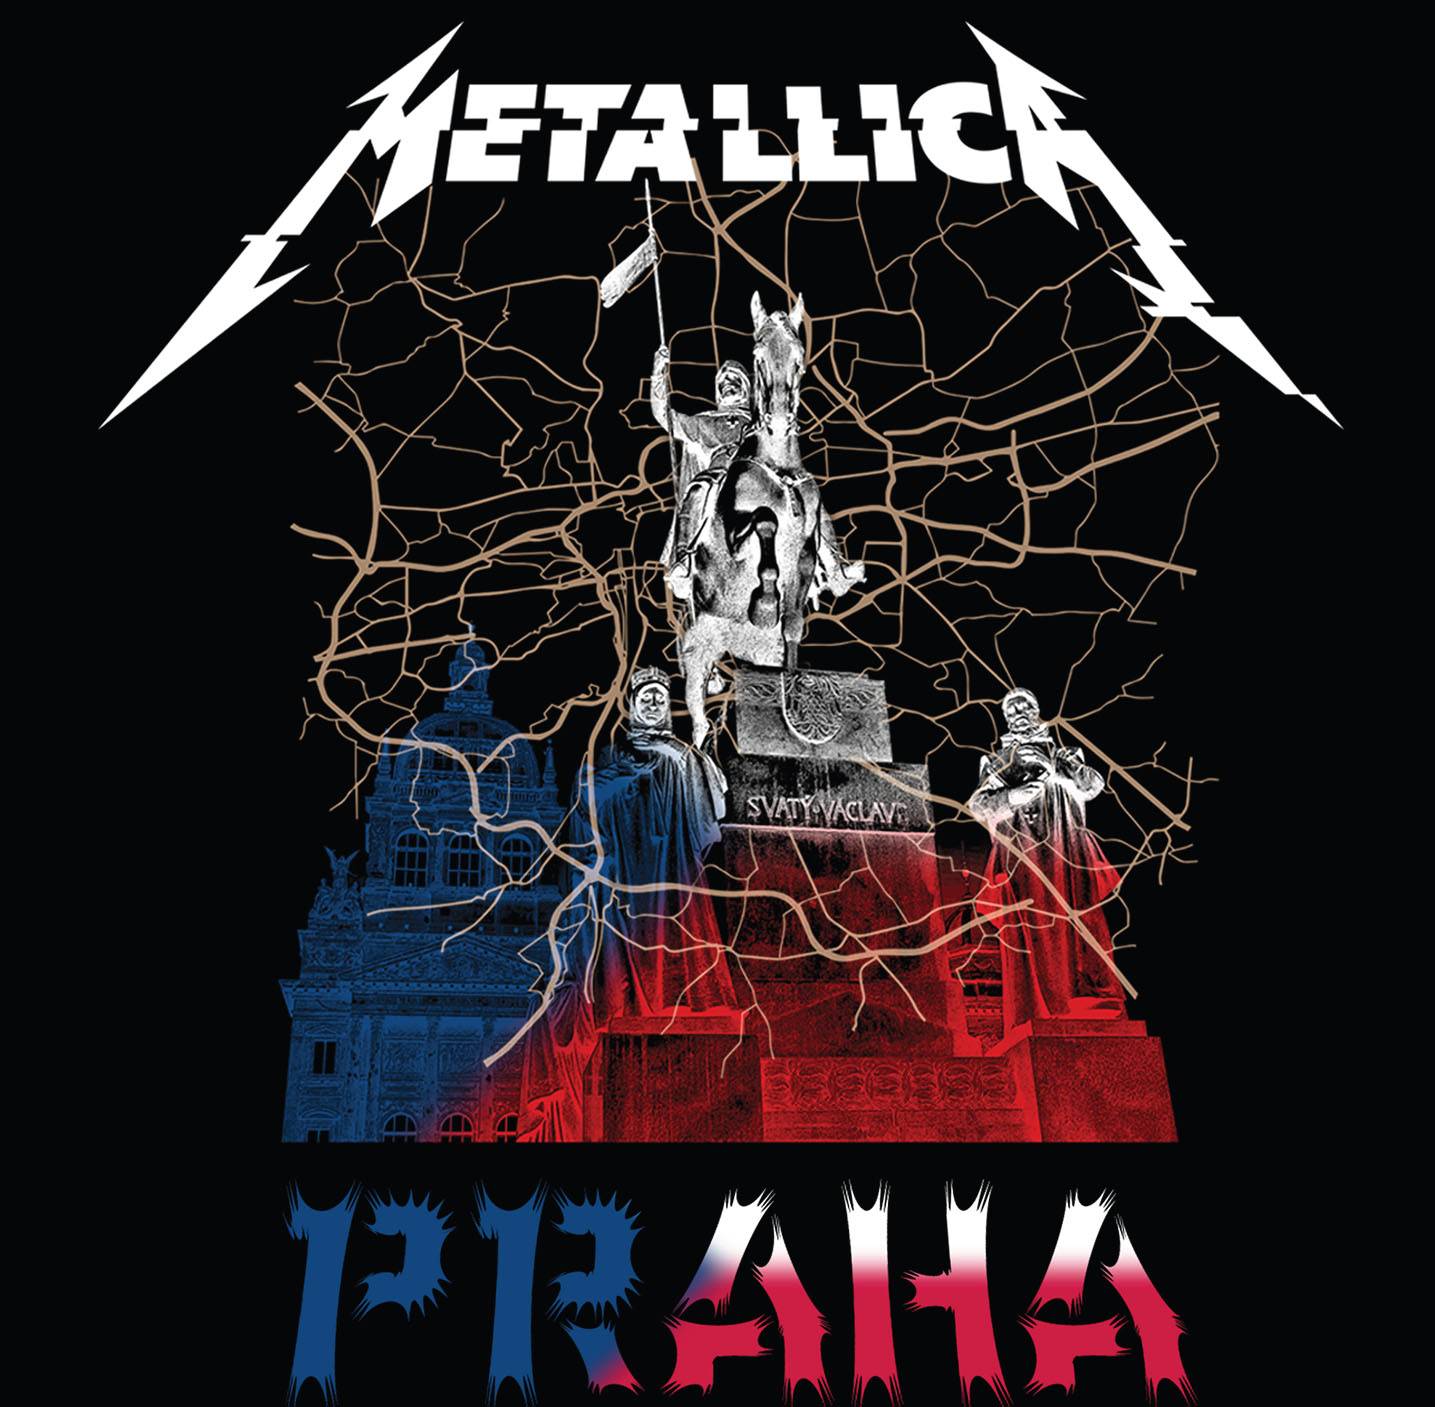 RECENZE: Metallica v Letňanech na CD a v MP3 - záznam srpnového koncertu z Prahy zvýrazňuje silné stránky kapely